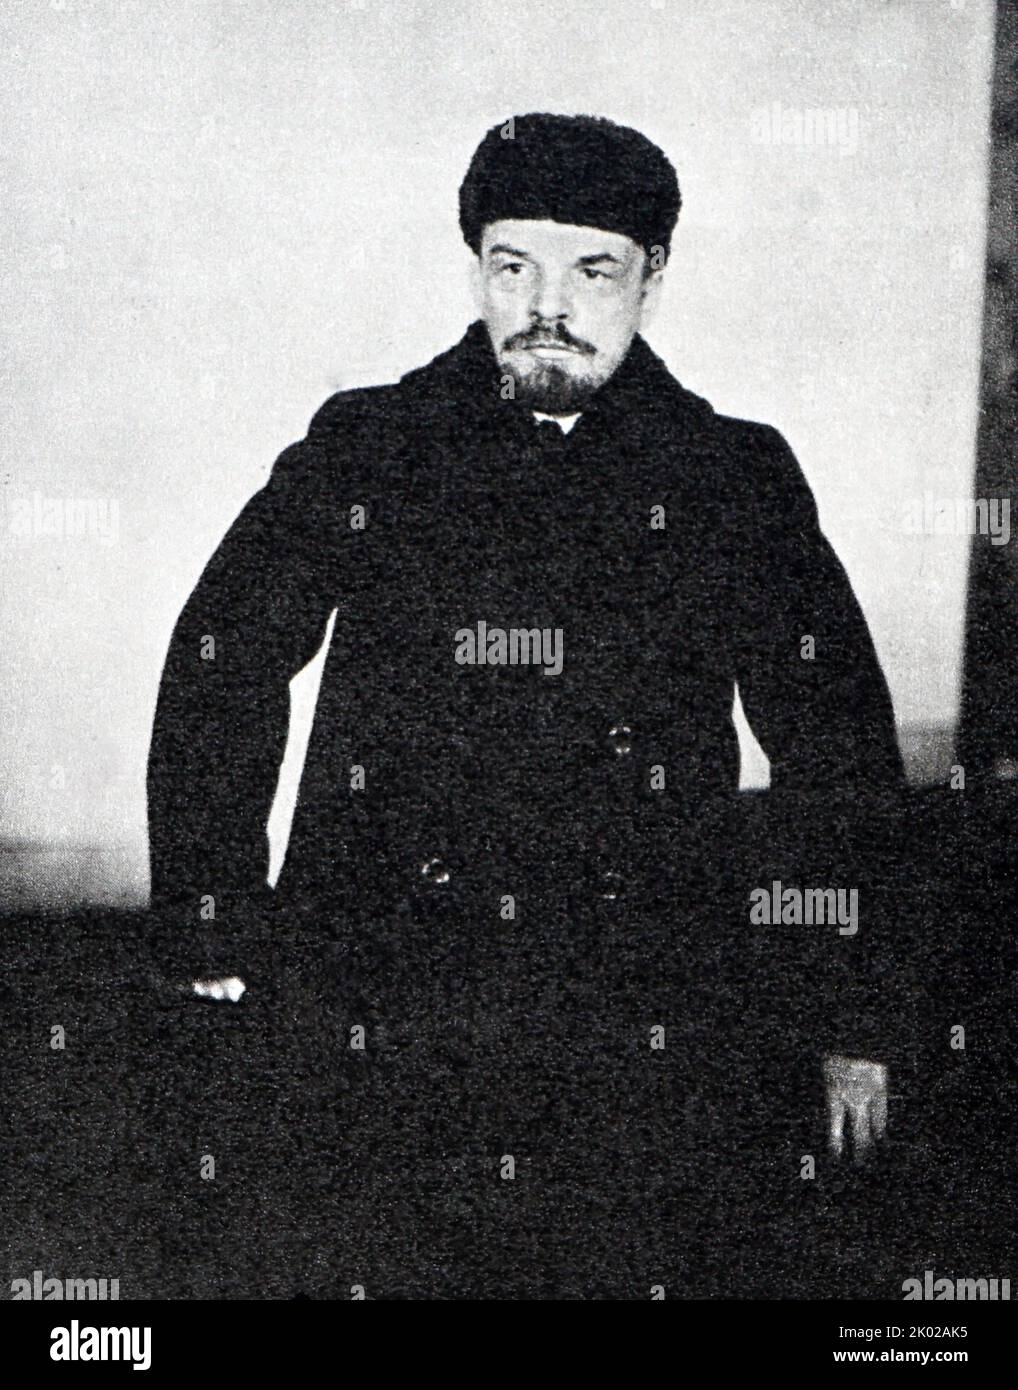 Lenin 1919. Mosca. Vladimir Ilyich Ulyanov (1870 – 1924), noto con il suo alias Lenin, è stato un rivoluzionario russo, politico e teorico politico. Fu capo di governo della Russia sovietica dal 1917 al 1924 e dell'Unione sovietica dal 1922 al 1924. Foto Stock